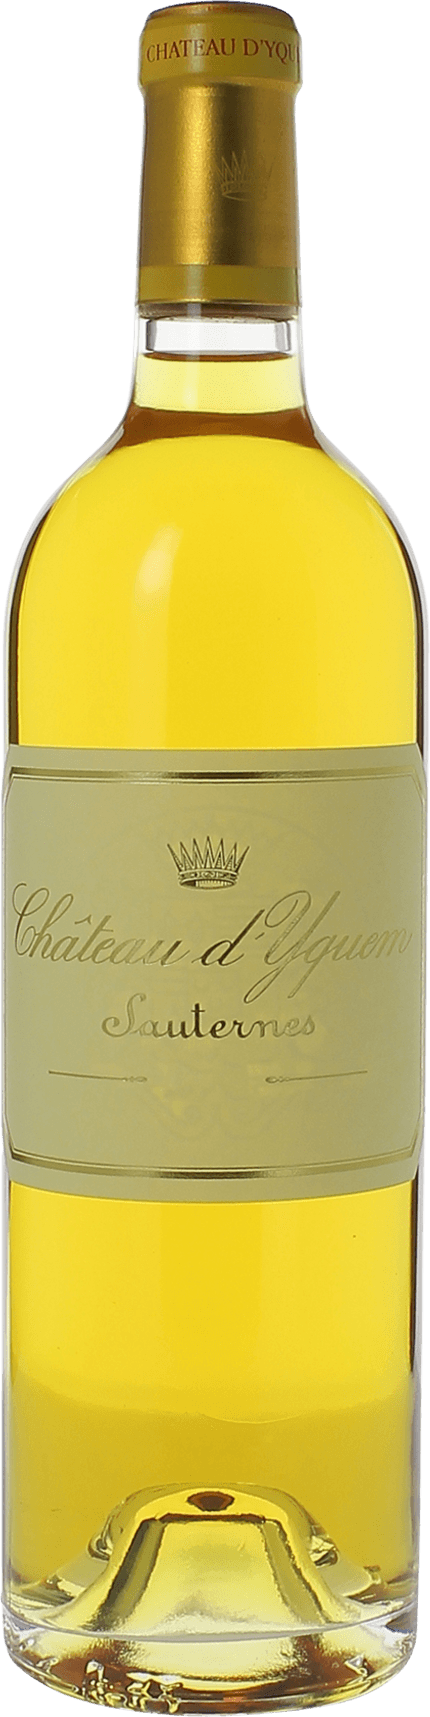 Yquem 1982 1er Cru Suprieur Sauternes, Bordeaux blanc